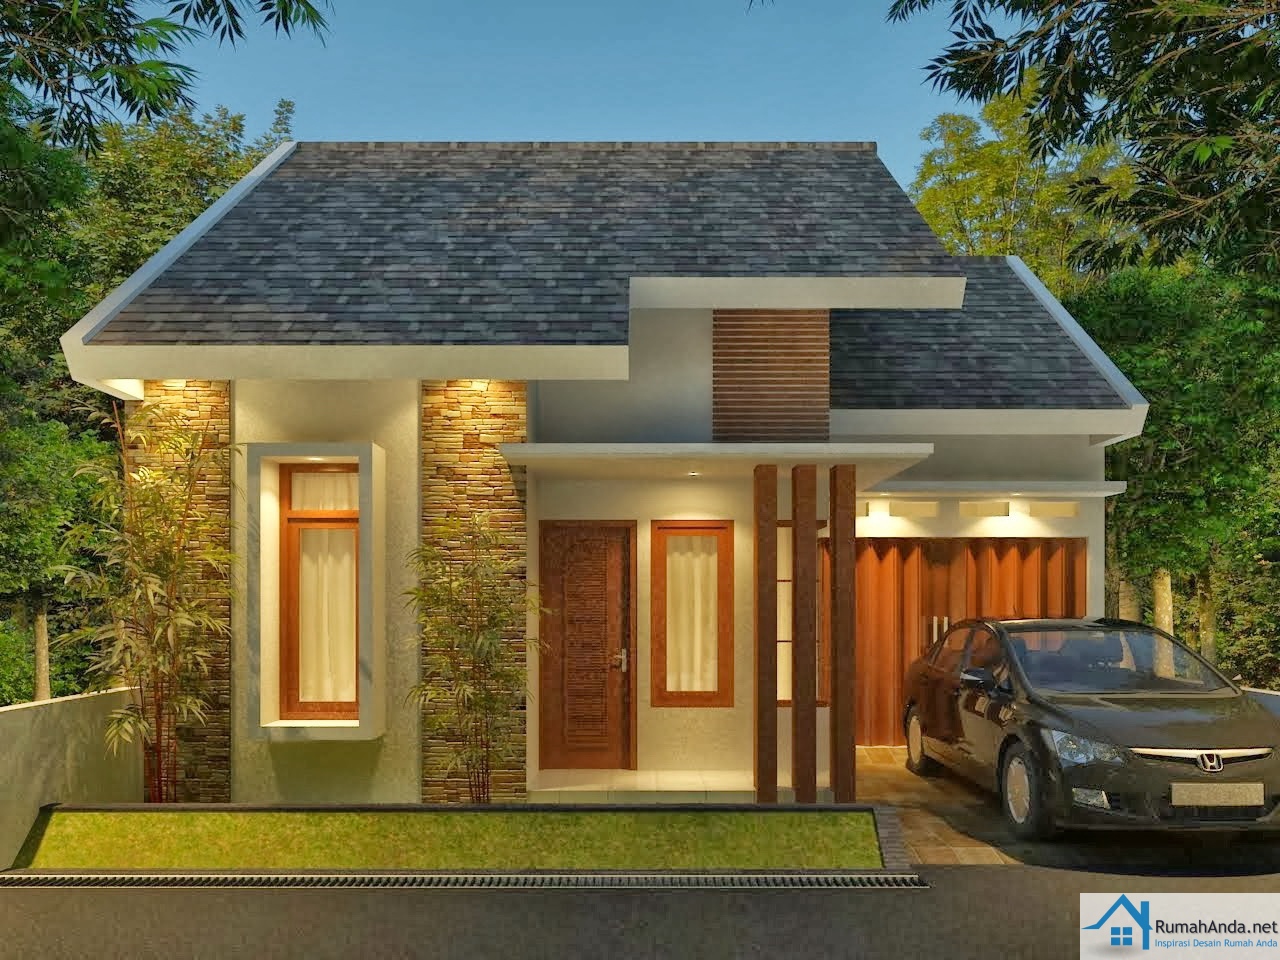  Desain Rumah Minimalis Modern 1 dan 2 Lantai 2020 Contoh 